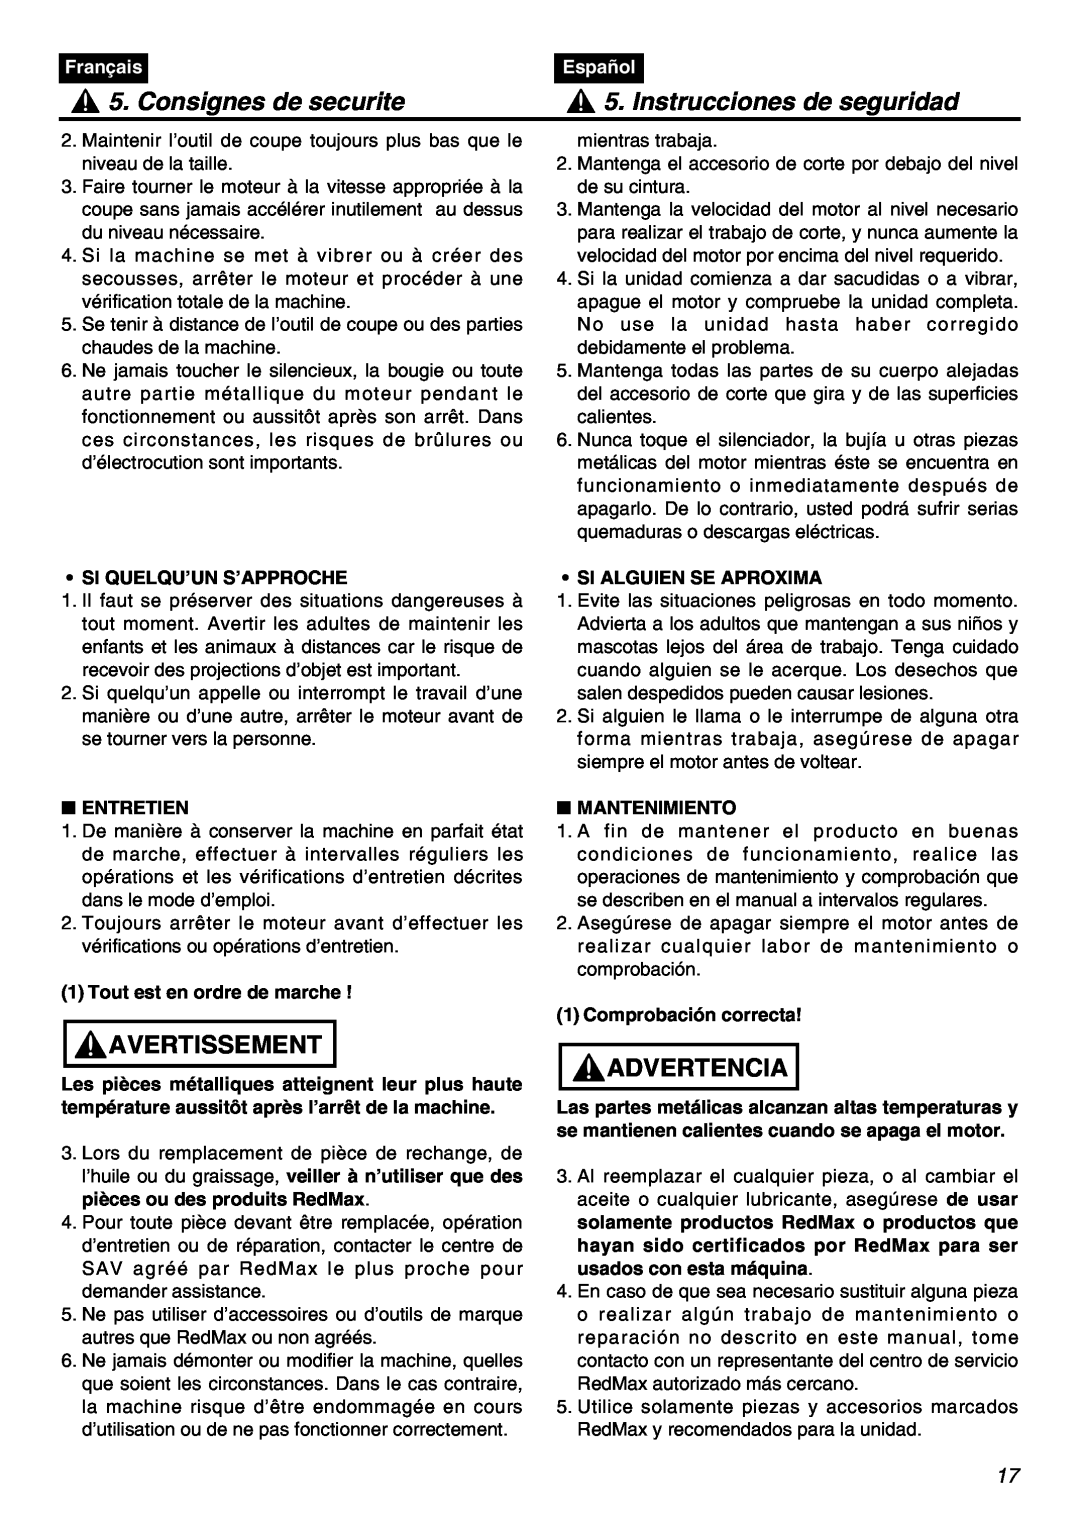 Univex SRTZ2401-CA manual Consignes de securite, Instrucciones de seguridad, Avertissement, Advertencia, Français, Español 